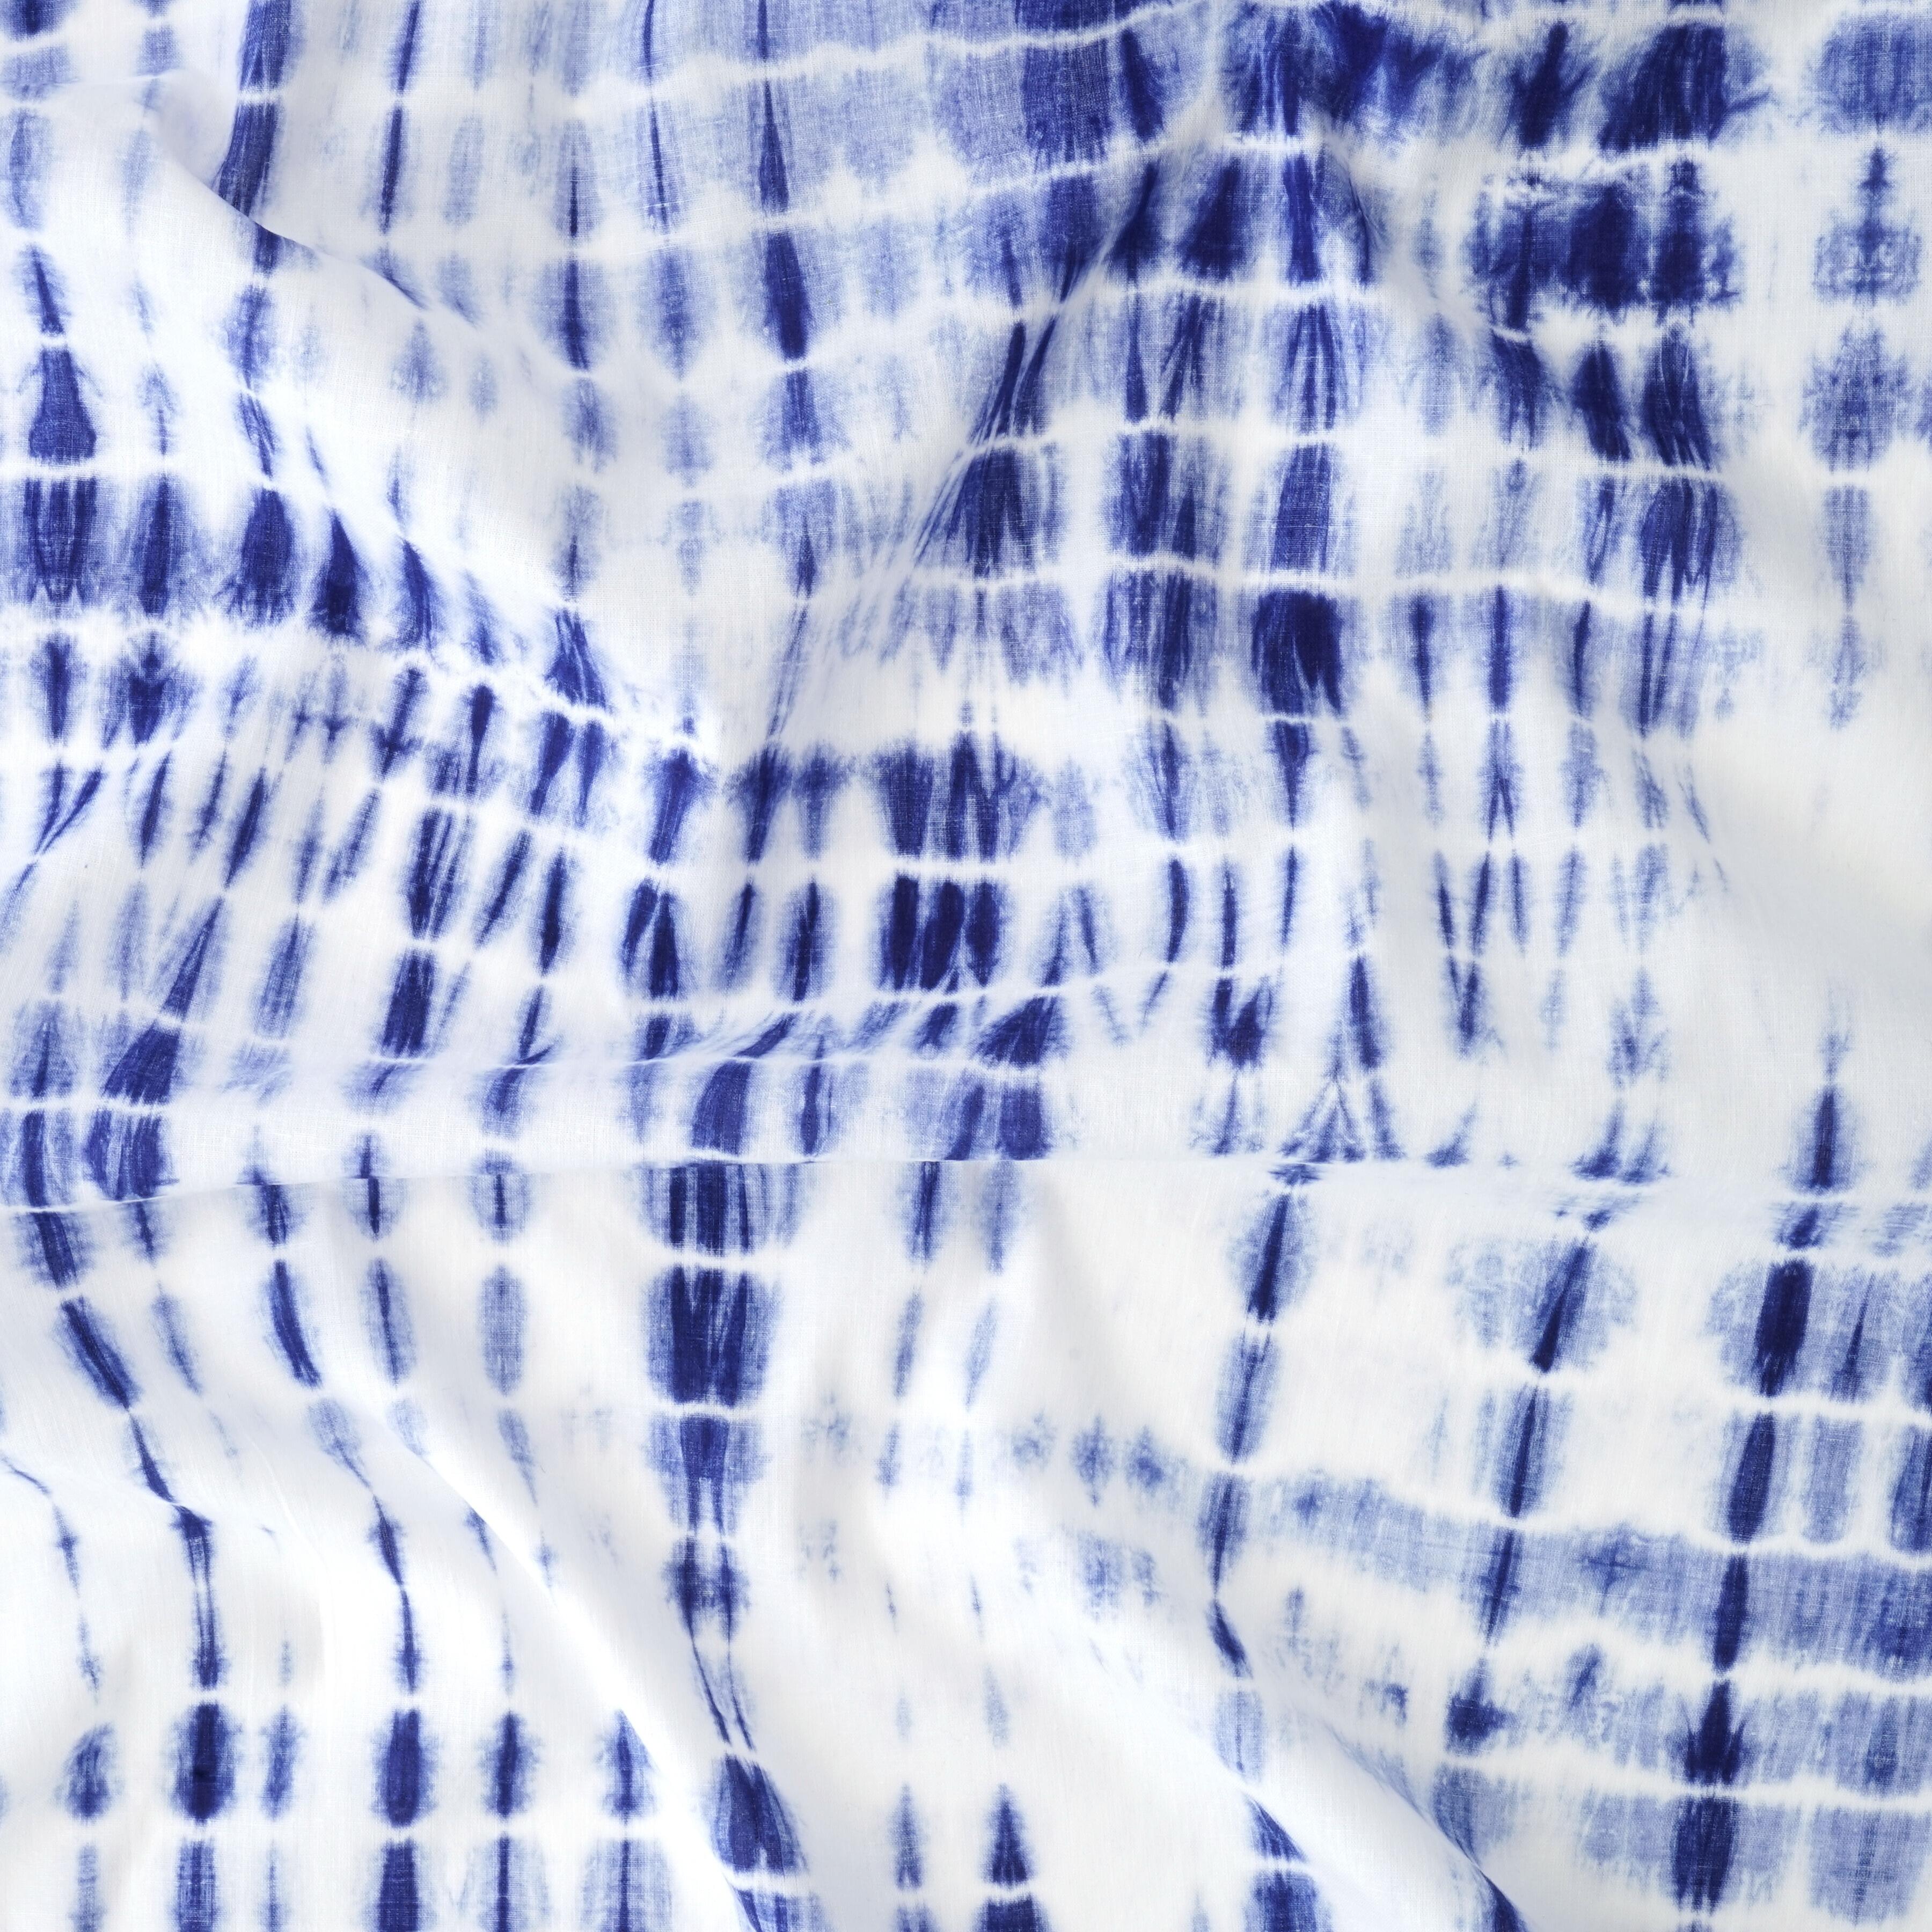 MUN01 - Tie Dye - Shibori - Cotton Cloth - Blue Dye - Contrast